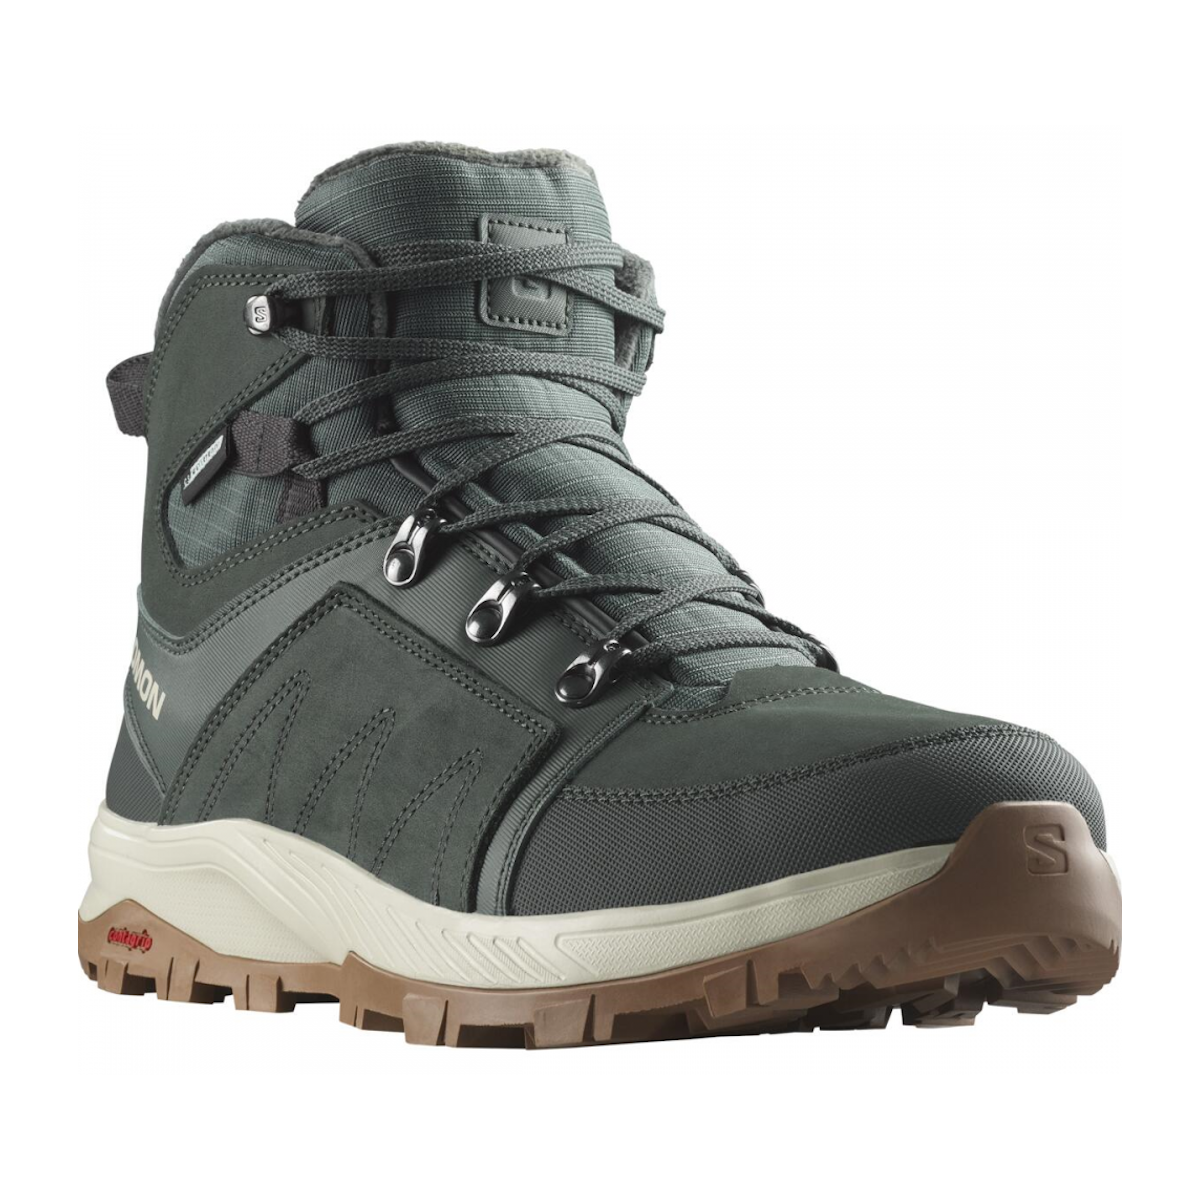 SALOMON OUTCHILL TS CSWP winter shoes - dark green/white